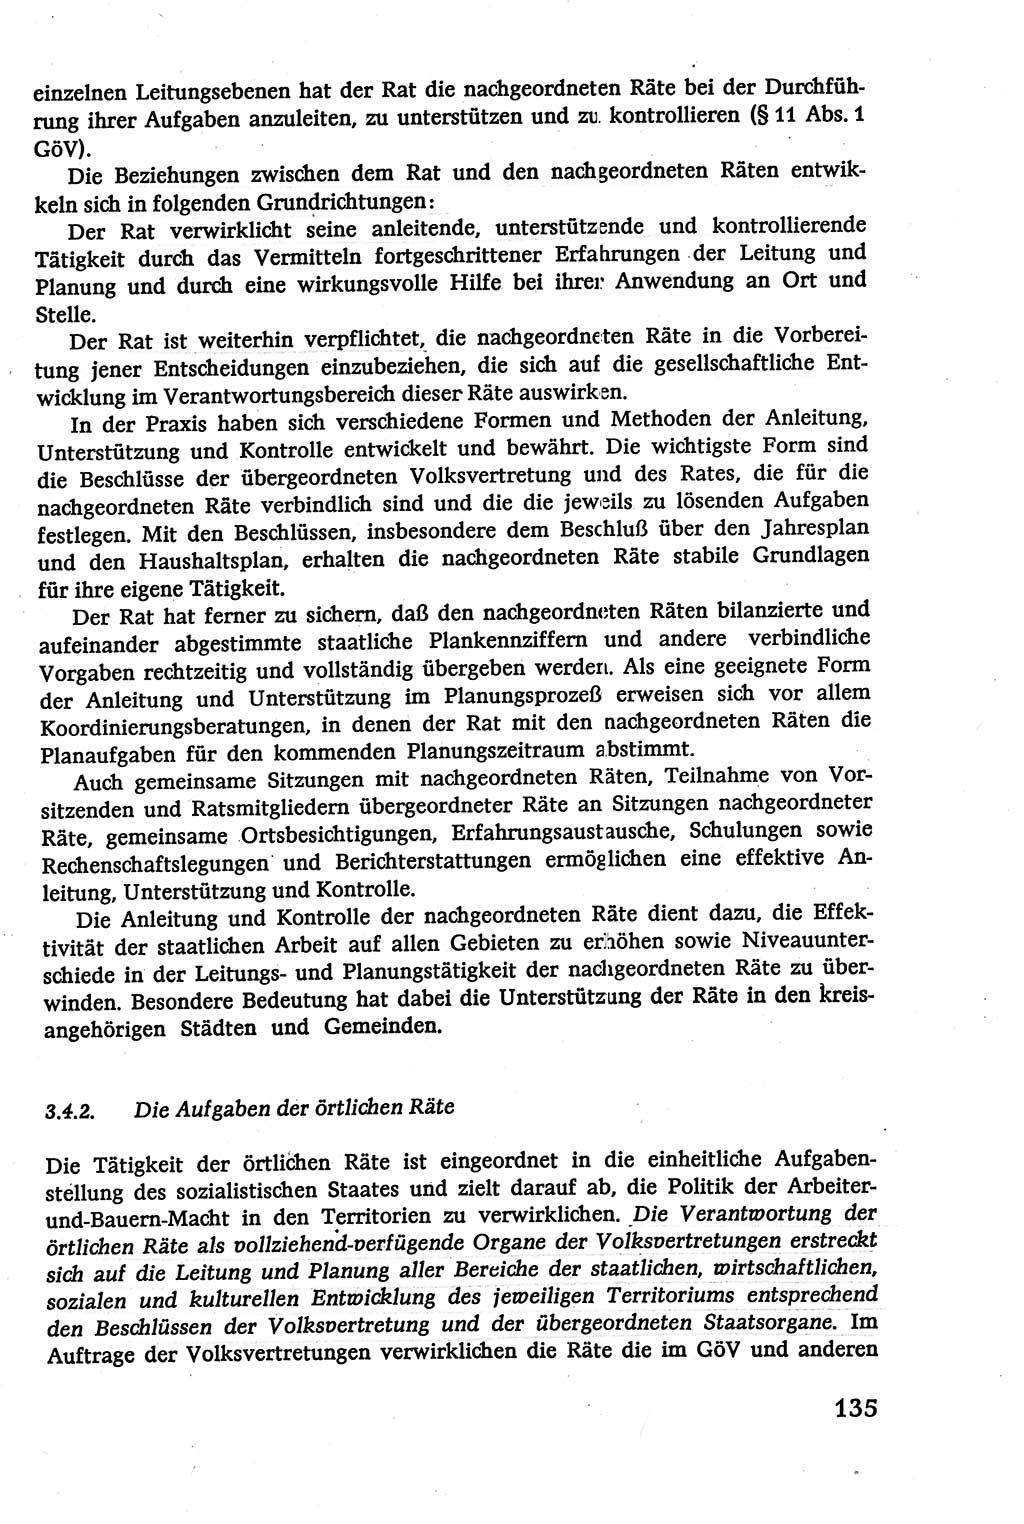 Verwaltungsrecht [Deutsche Demokratische Republik (DDR)], Lehrbuch 1979, Seite 135 (Verw.-R. DDR Lb. 1979, S. 135)